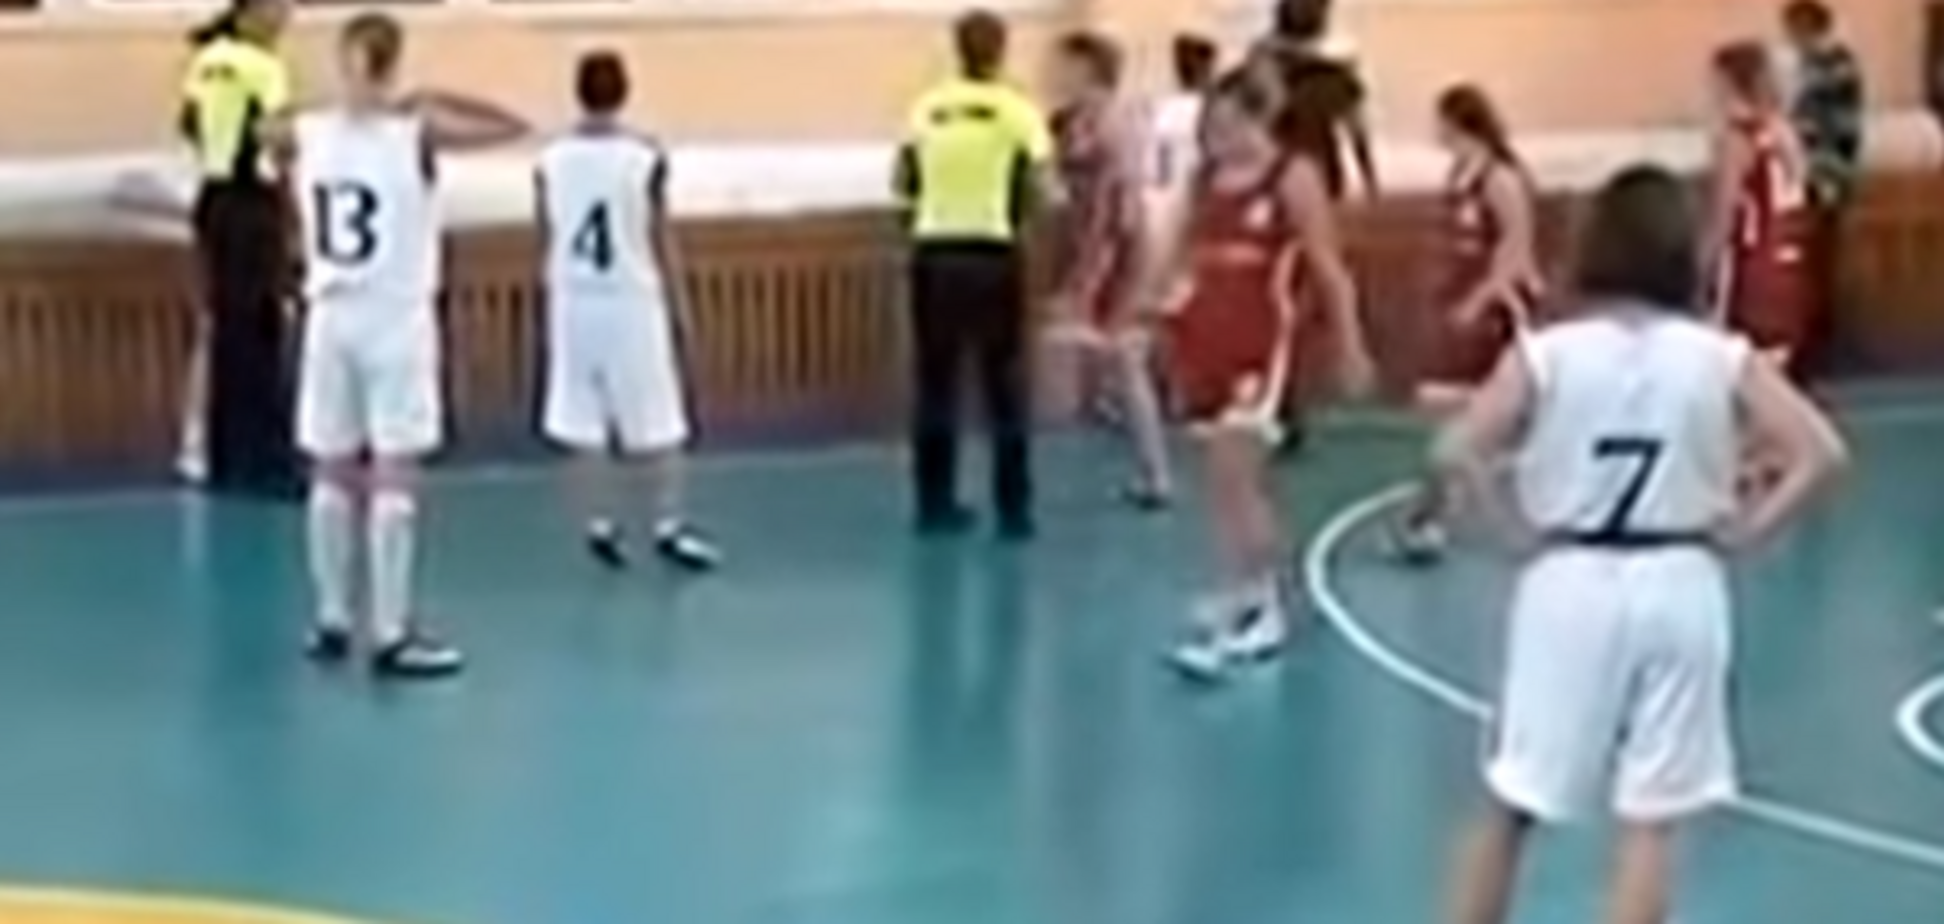 Девушки устроили драку во время матча чемпионата Украины по баскетболу: опубликовано видео